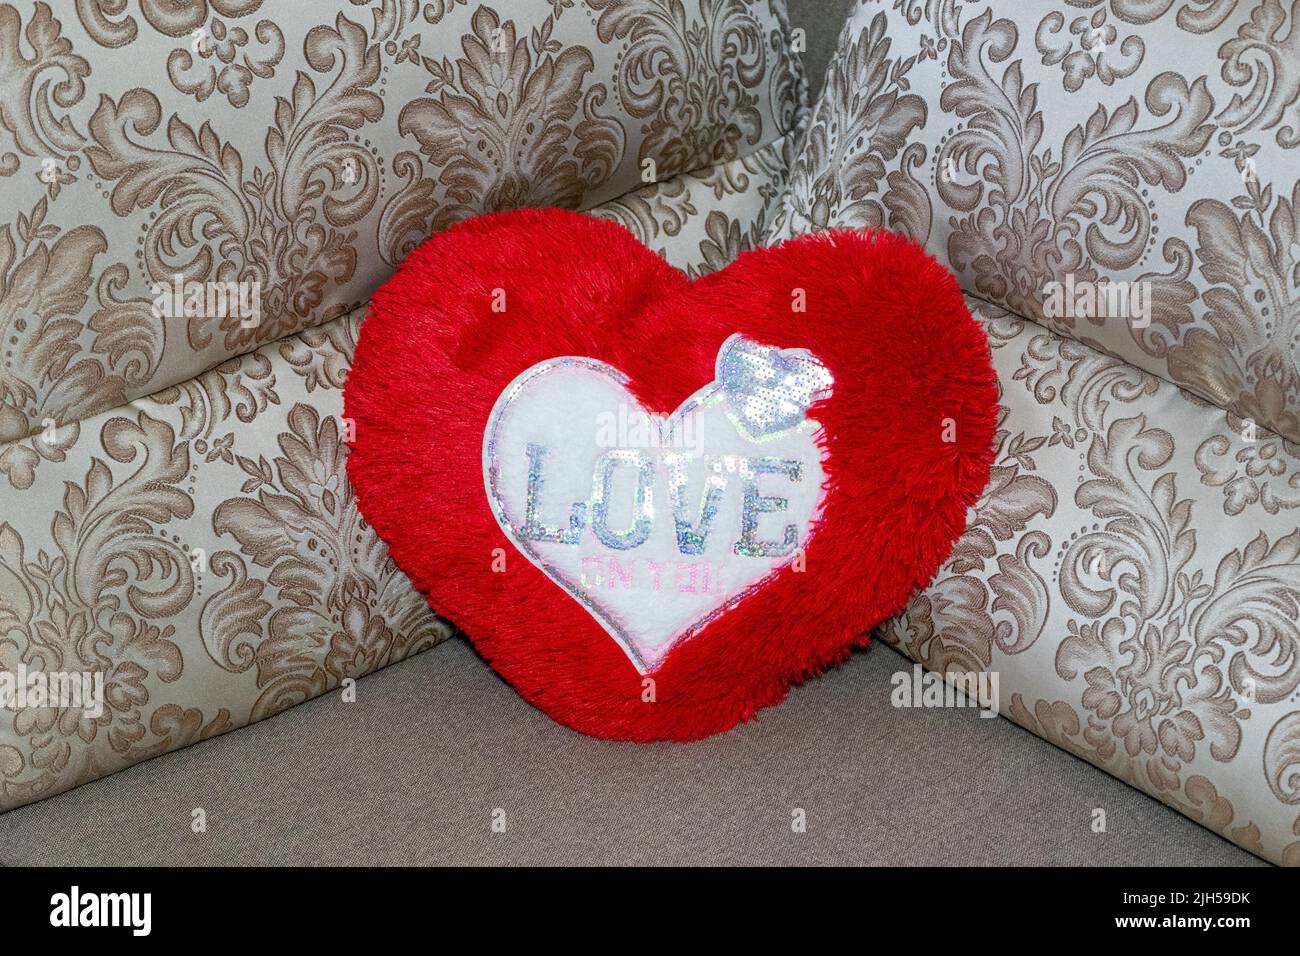 Cuscino Cuore Grande cuori rosso san valentino amore regalo gadget